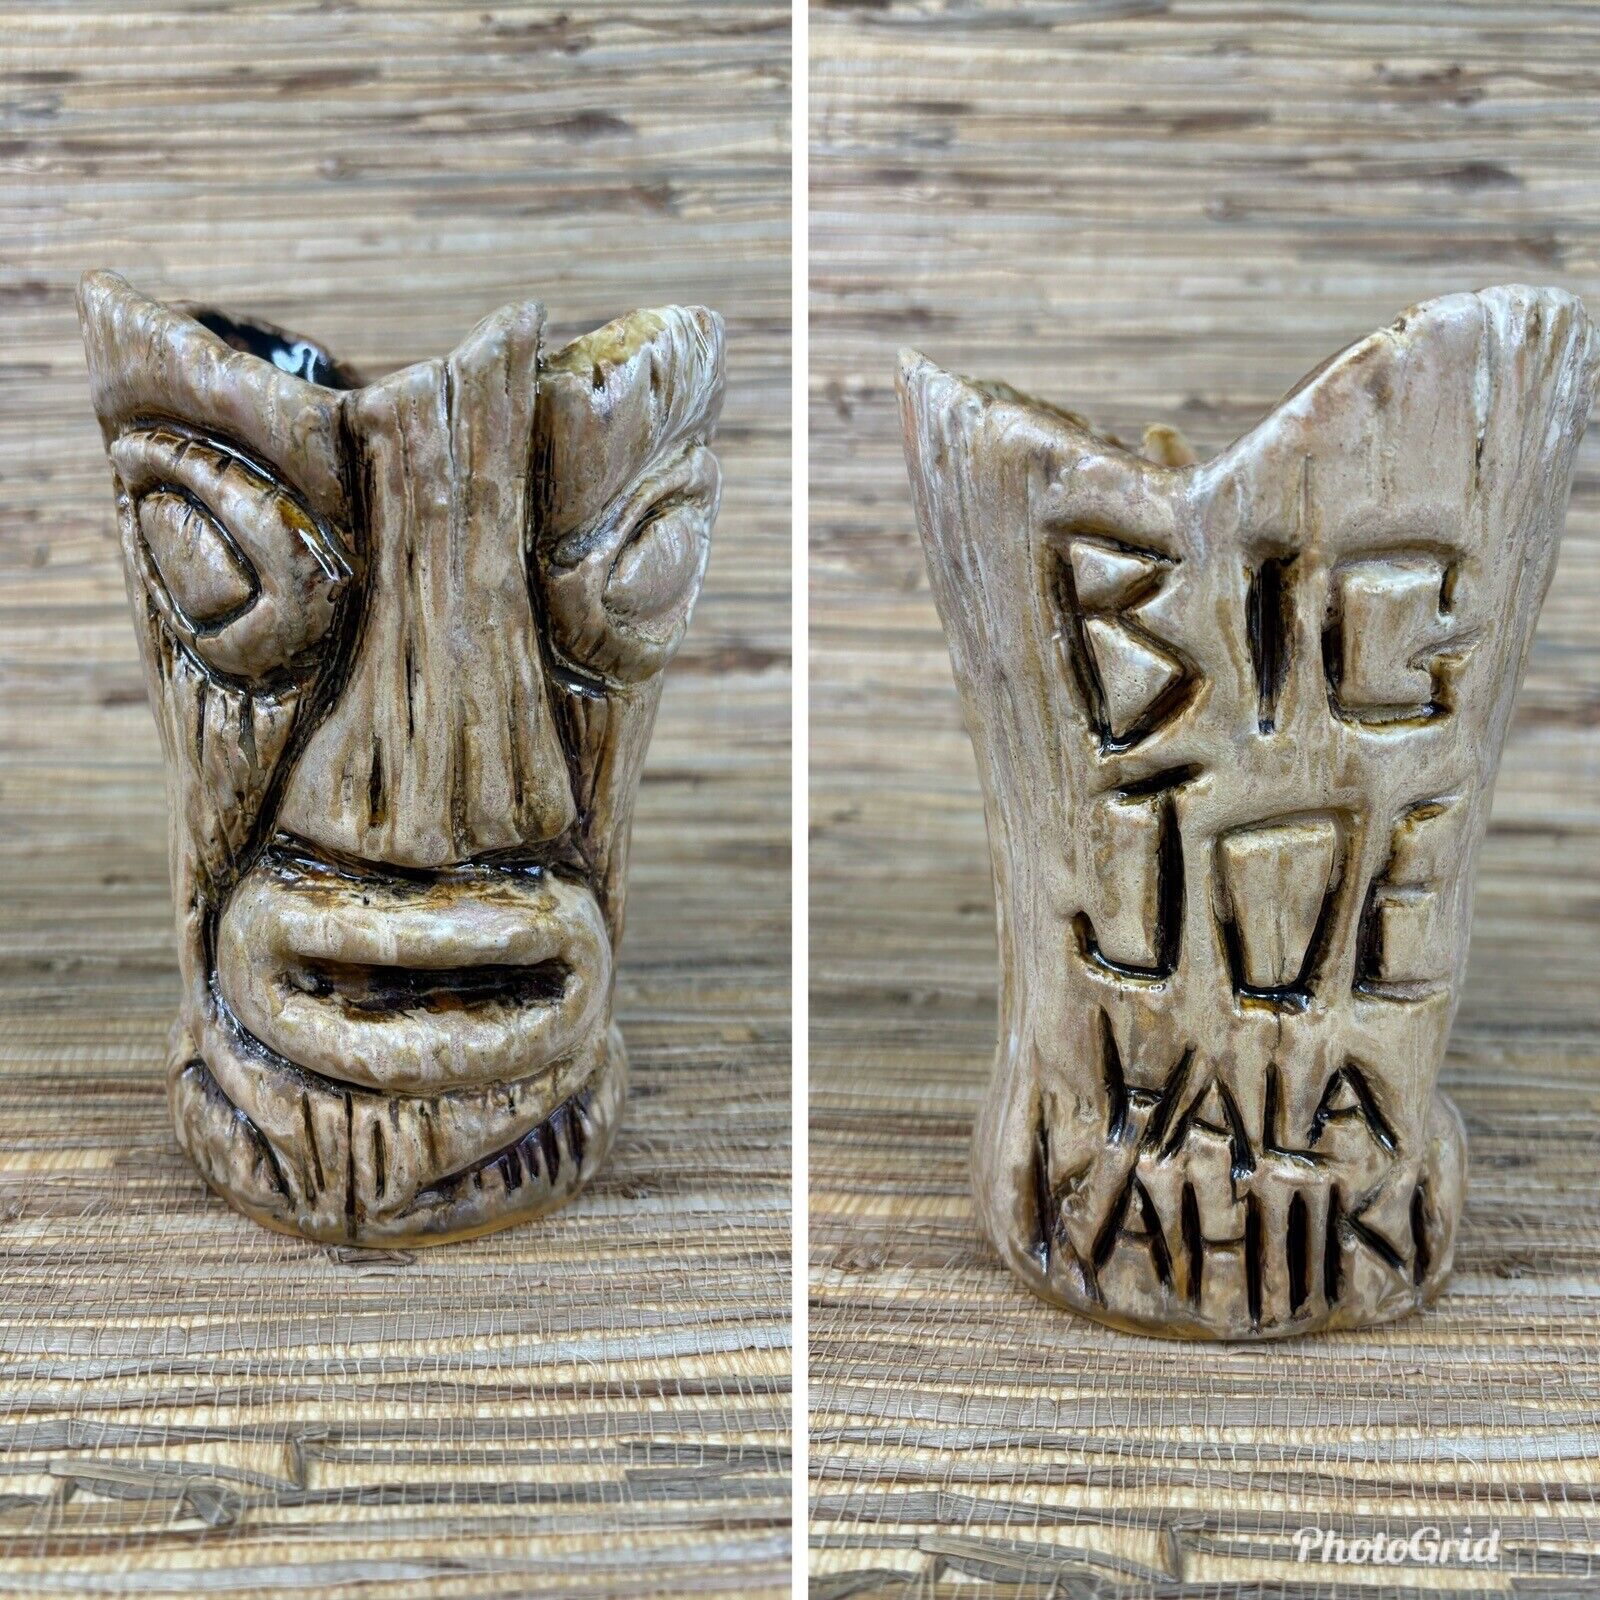 Big Joe Tiki Mug from Hala Kahiki Chicago Tiki Bar Based on Big Joe Tiki Carving